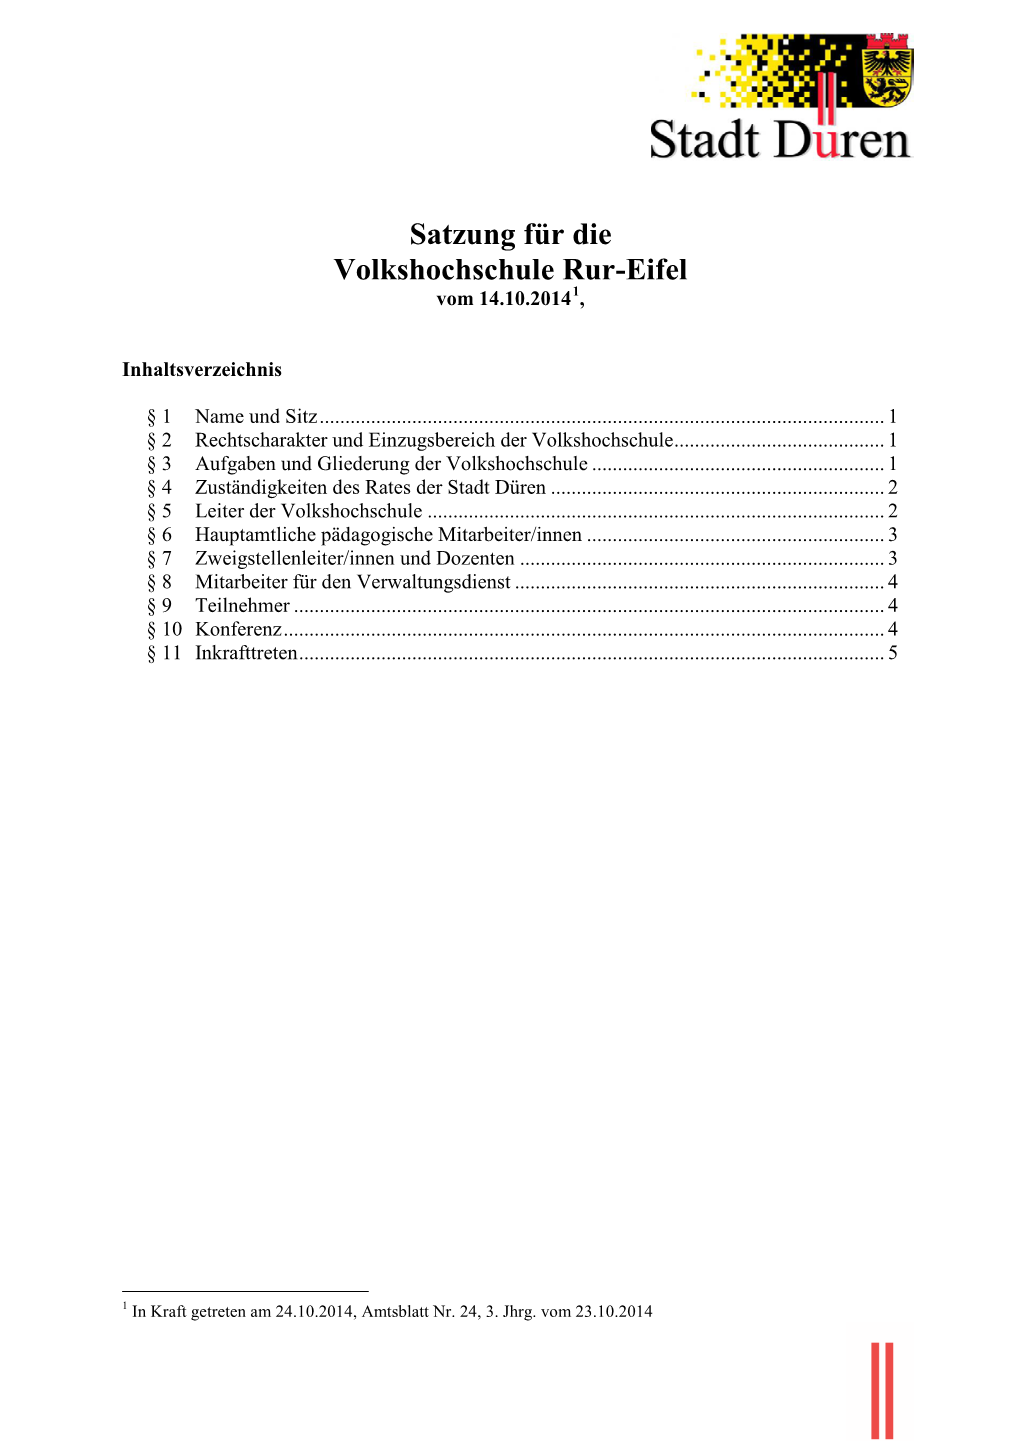 Satzung Für Die Volkshochschule Rur-Eifel Vom 14.10.20141